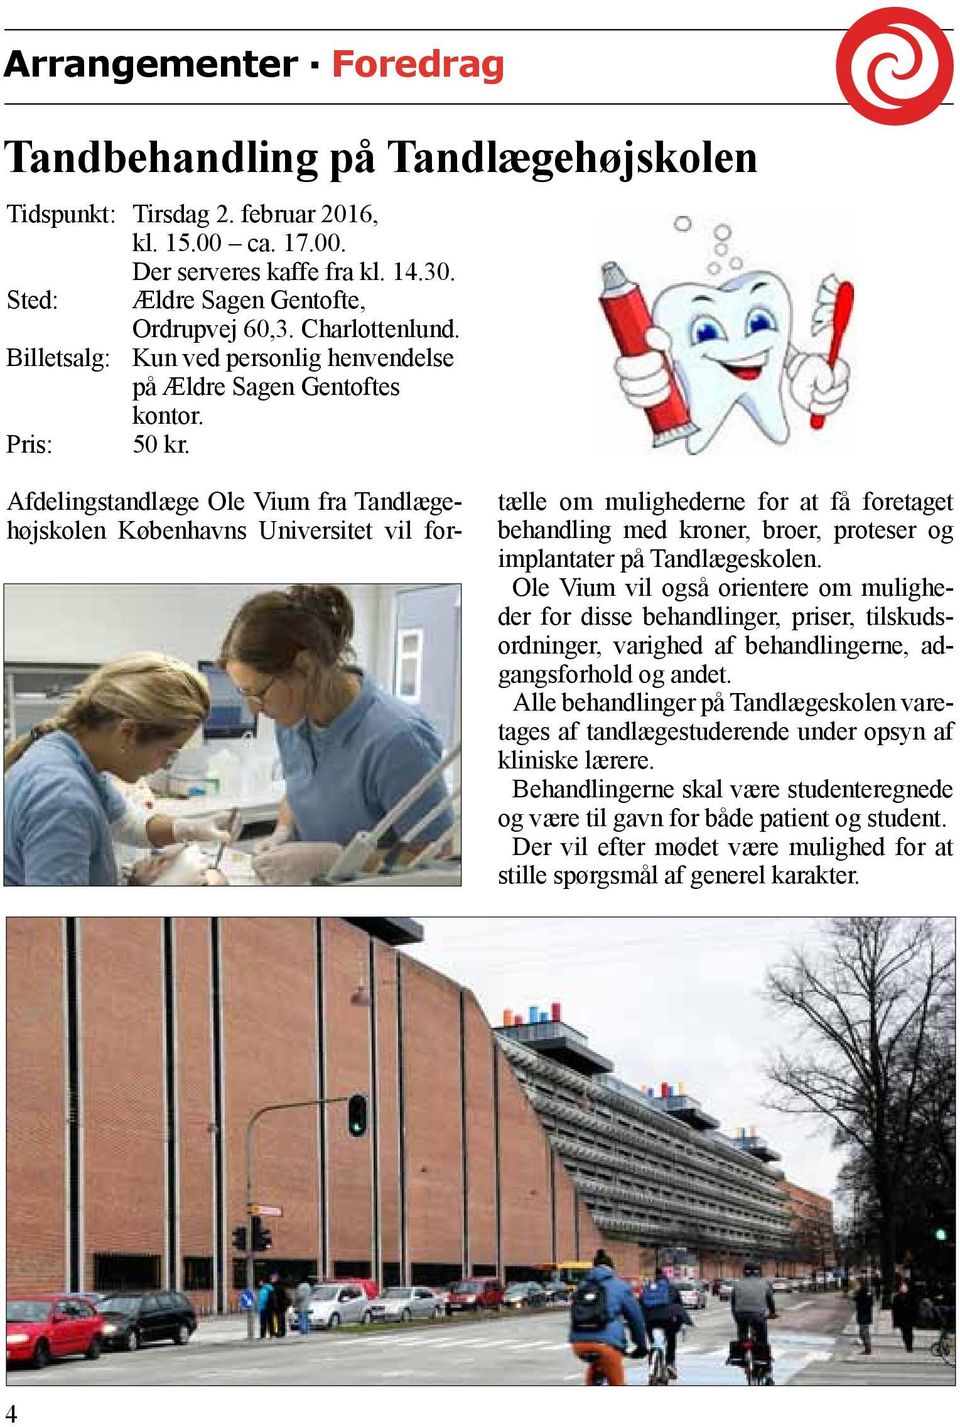 Afdelingstandlæge Ole Vium fra Tandlægehøjskolen Københavns Universitet vil for- tælle om mulighederne for at få foretaget behandling med kroner, broer, proteser og implantater på Tandlægeskolen.